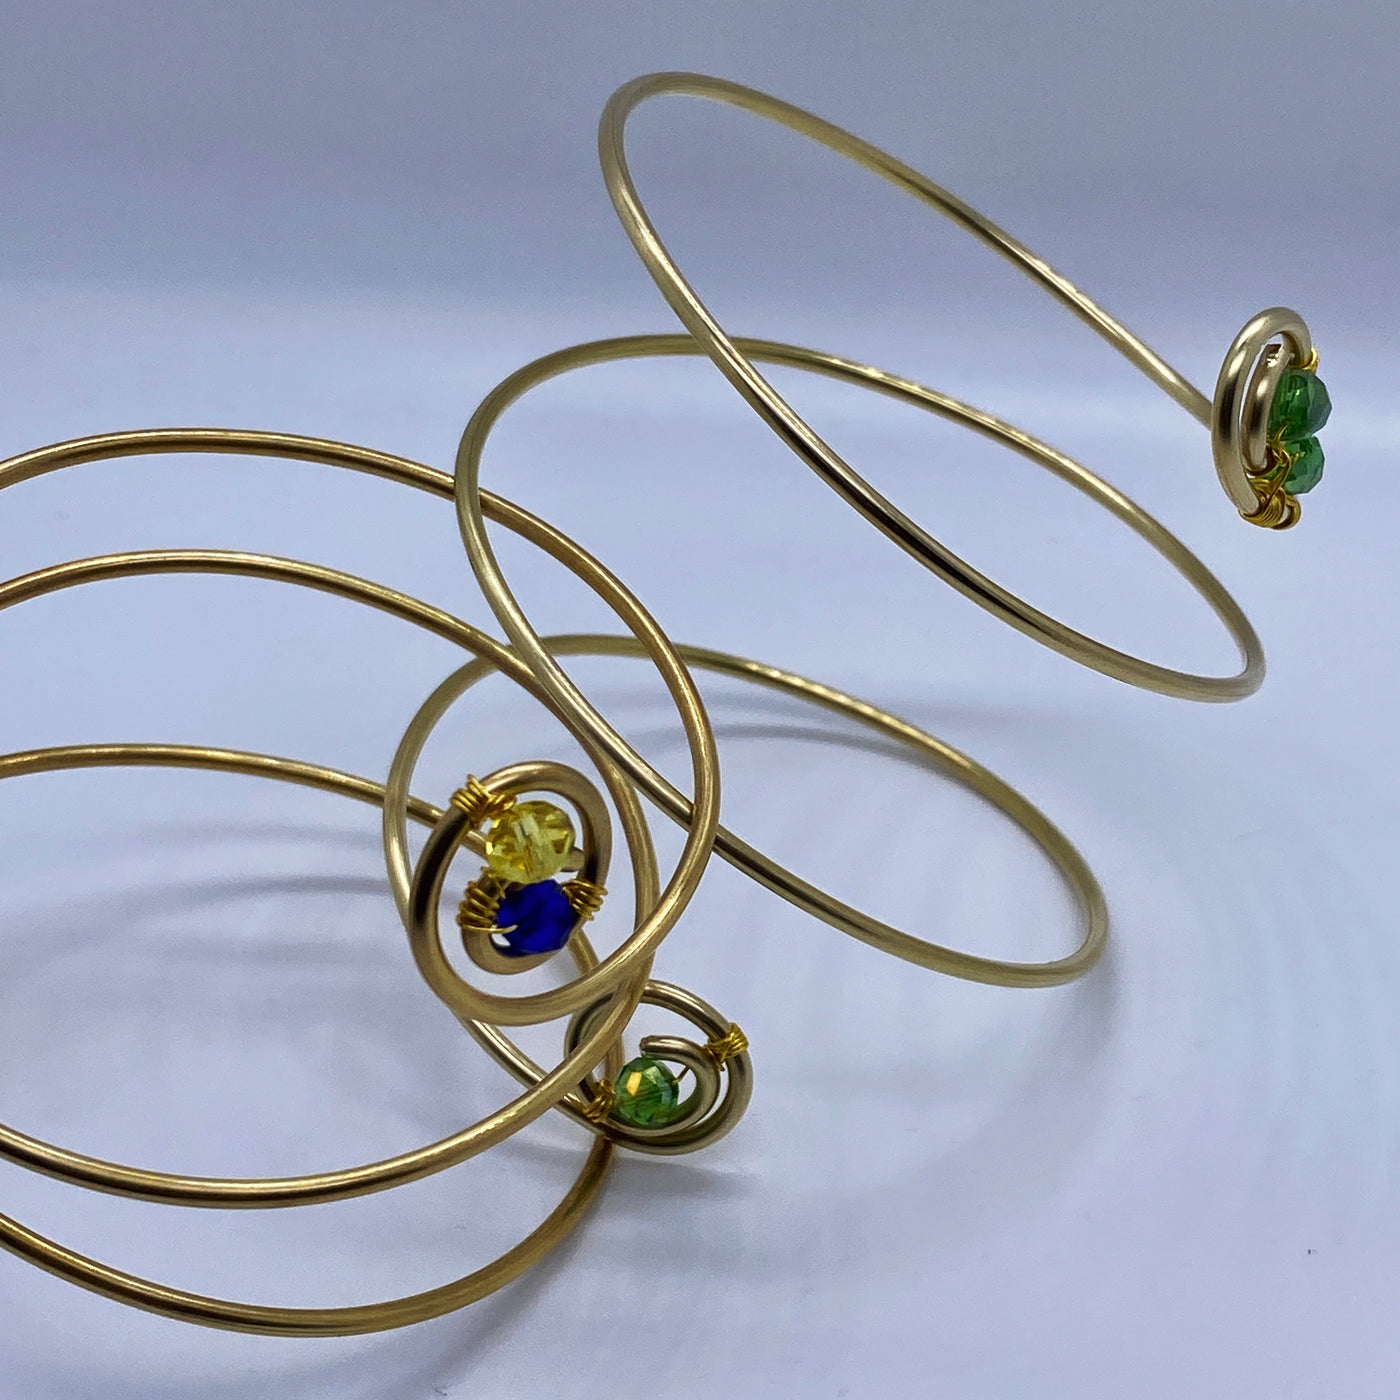 Long spiral brass bracelet with blue crystal rondelles